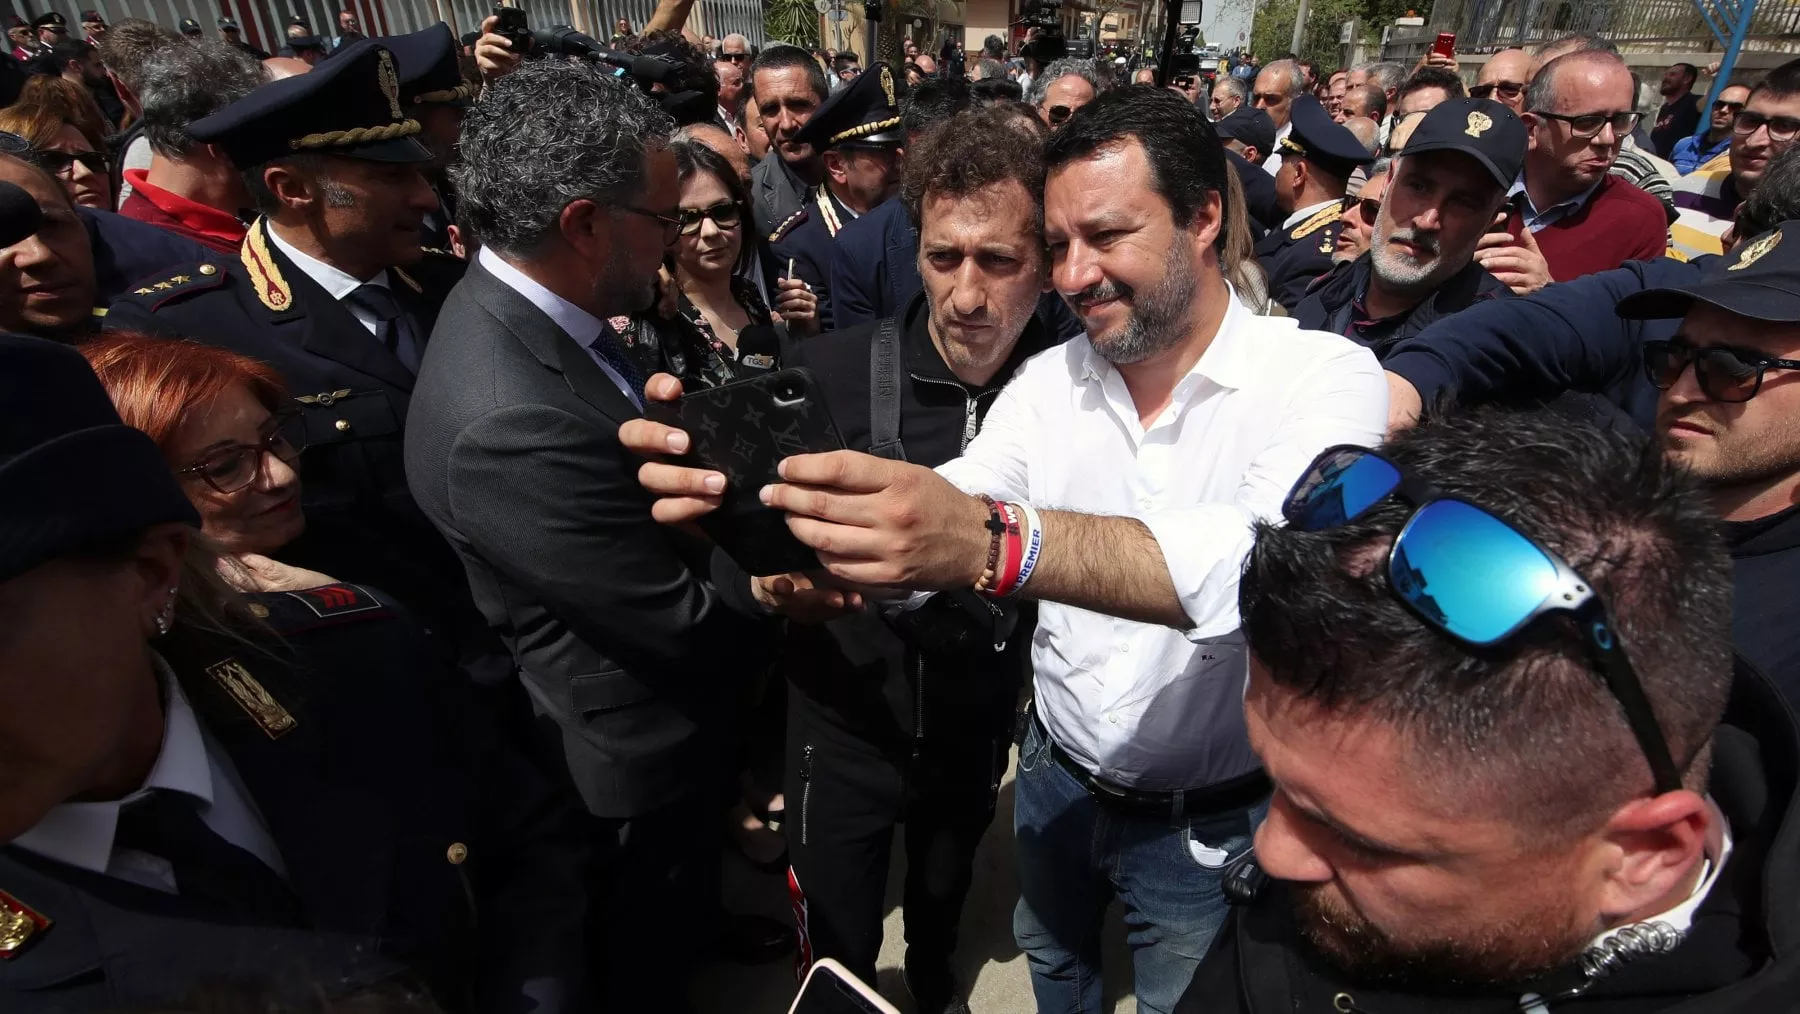 L'Italia che va a rotoli: dopo il flop di Renzi arriva Salvini appoggiato dalla dabbenaggine dei meridionali!